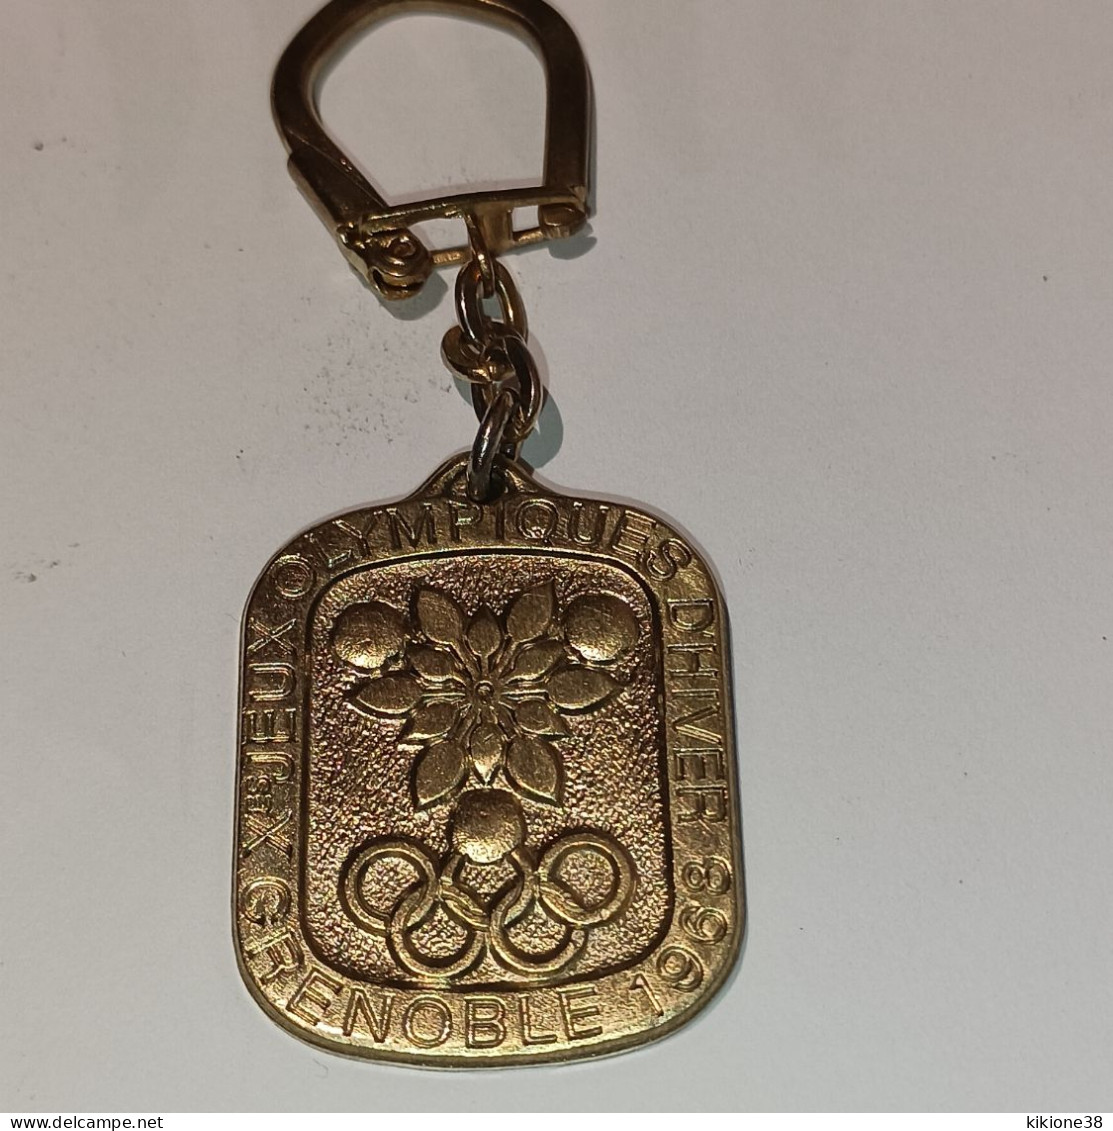 Porte Clé Rare En BRONZE - Jeux Olympiques D'hiver GRENOBLE 68. Objet Souvenir, Médaille, Badge, Pin's. - Habillement, Souvenirs & Autres